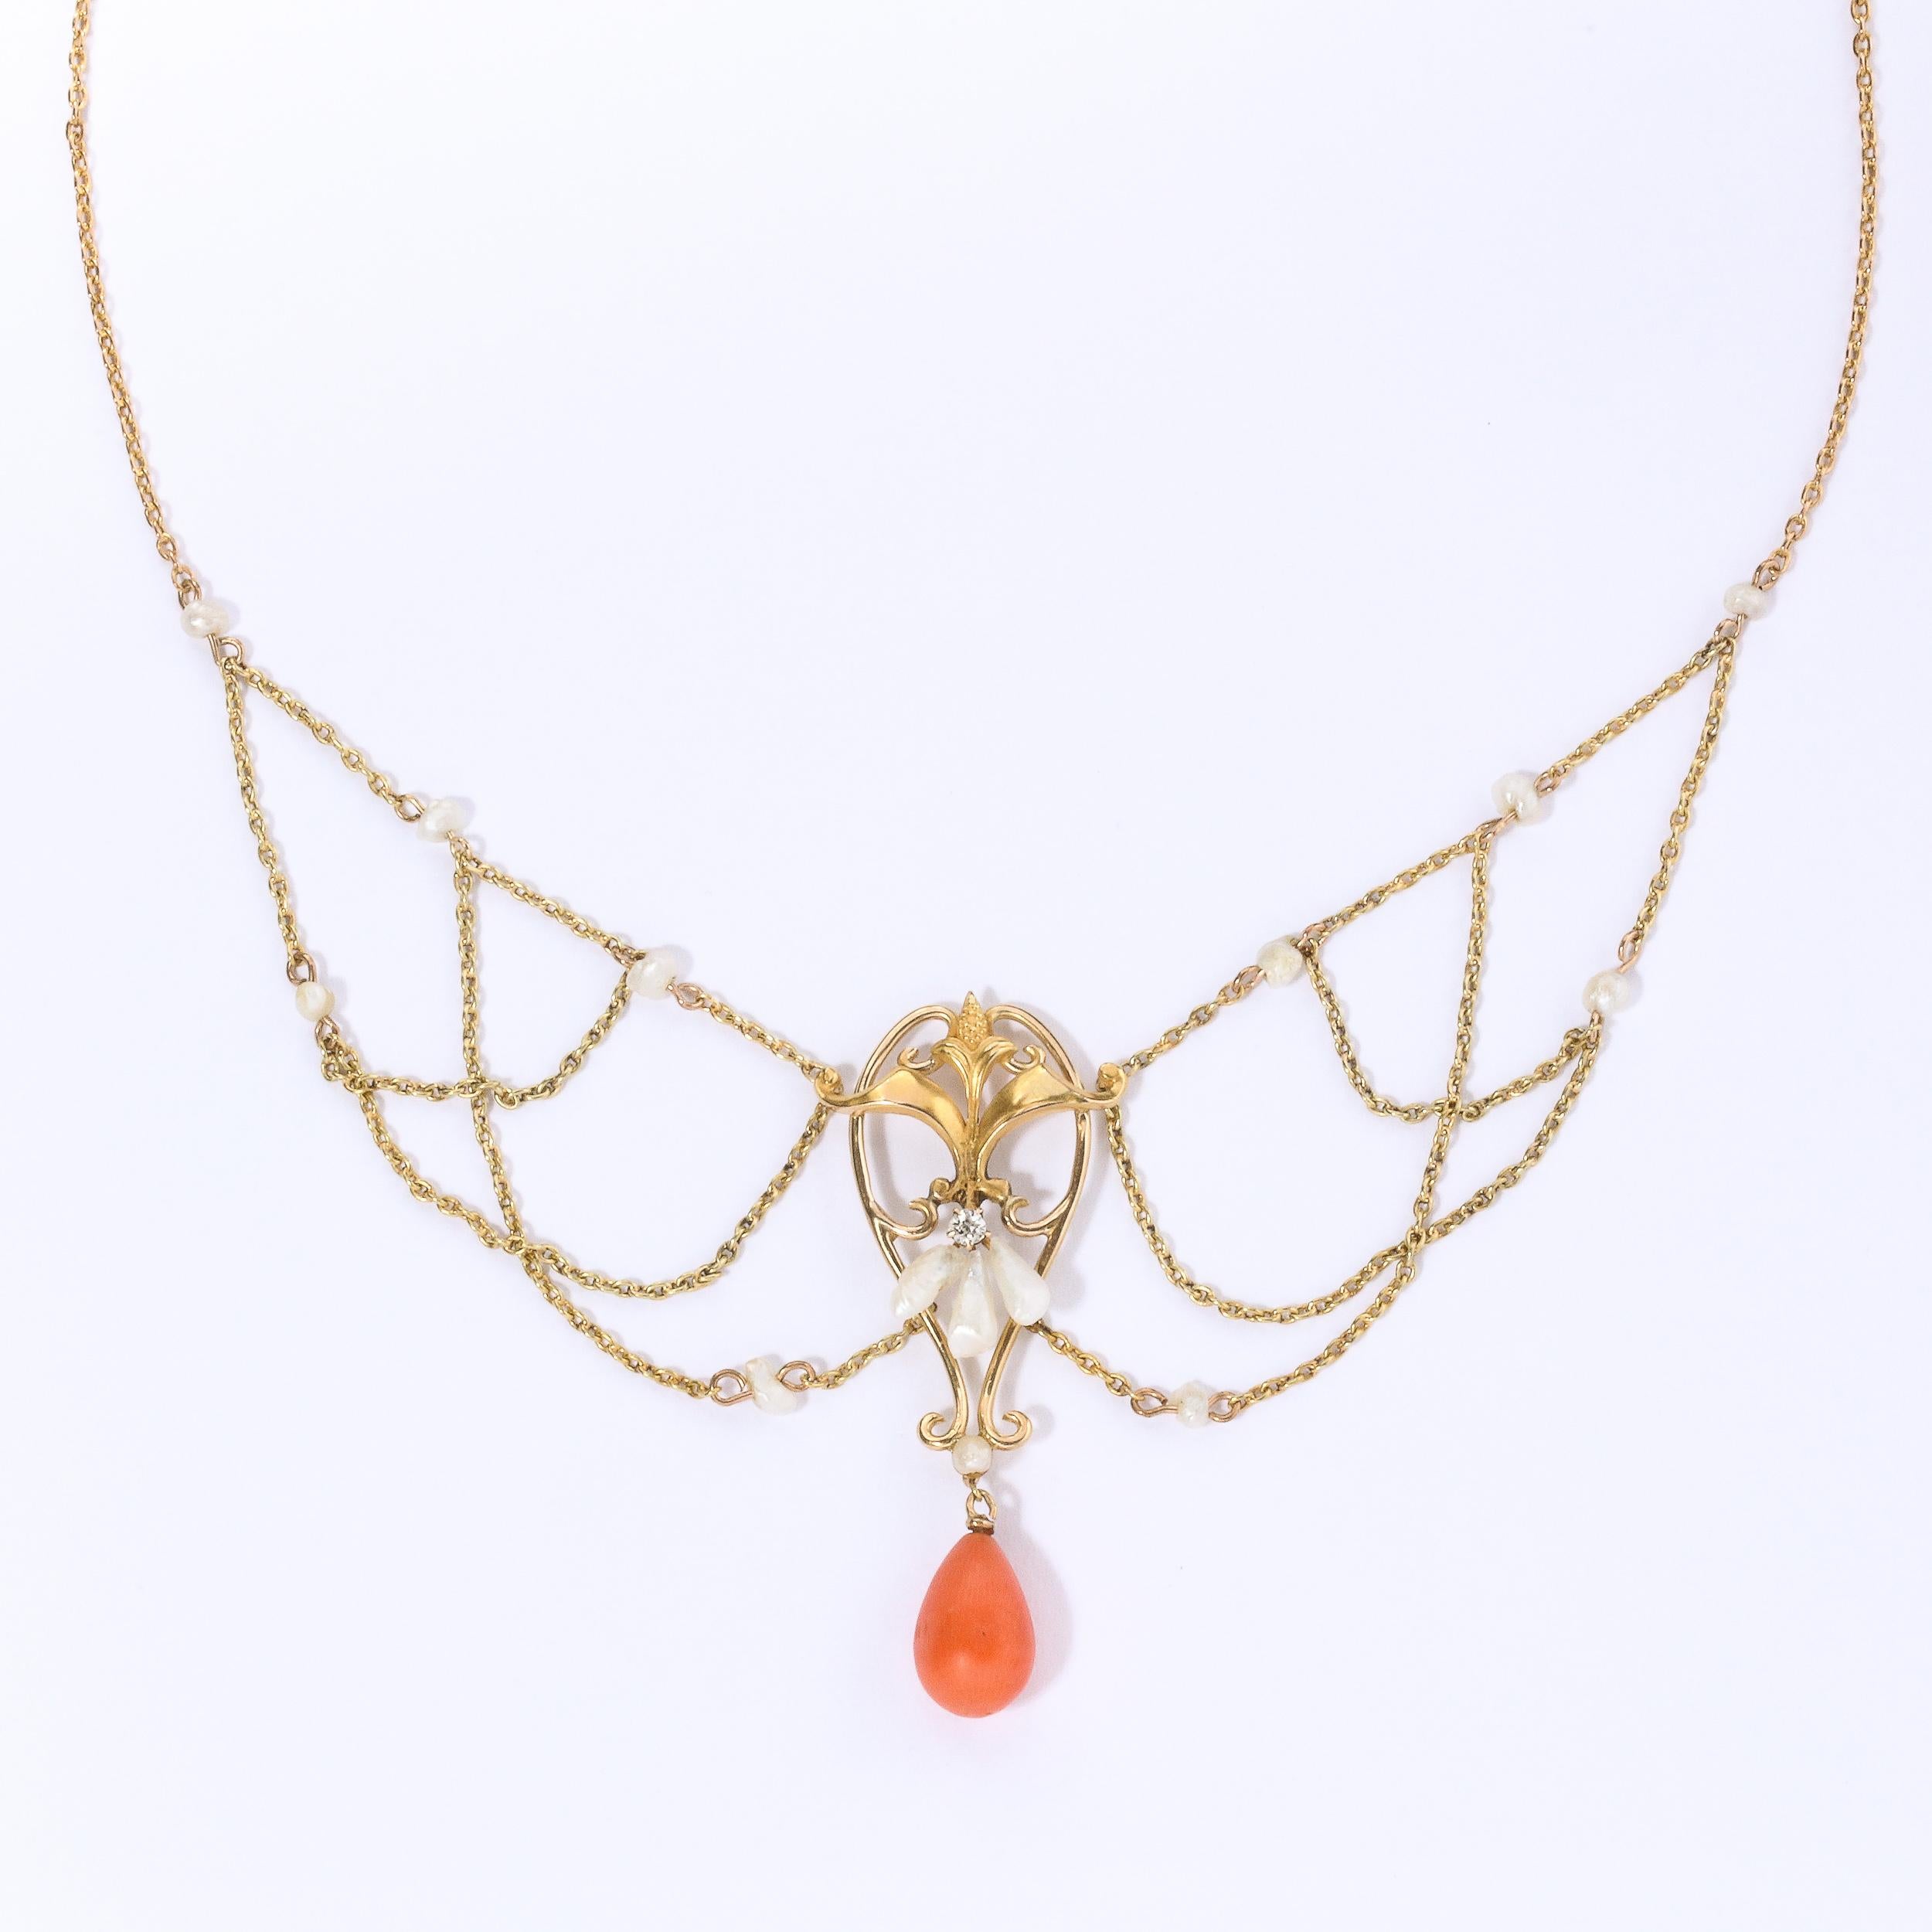 Collier swag en or 14k, perles, corail et diamants, avec un pendentif central en forme de feuillage, accentué par un diamant serti sur un anneau et trois perles naturelles. Le collier se termine par un pendentif en corail en forme de poire polie